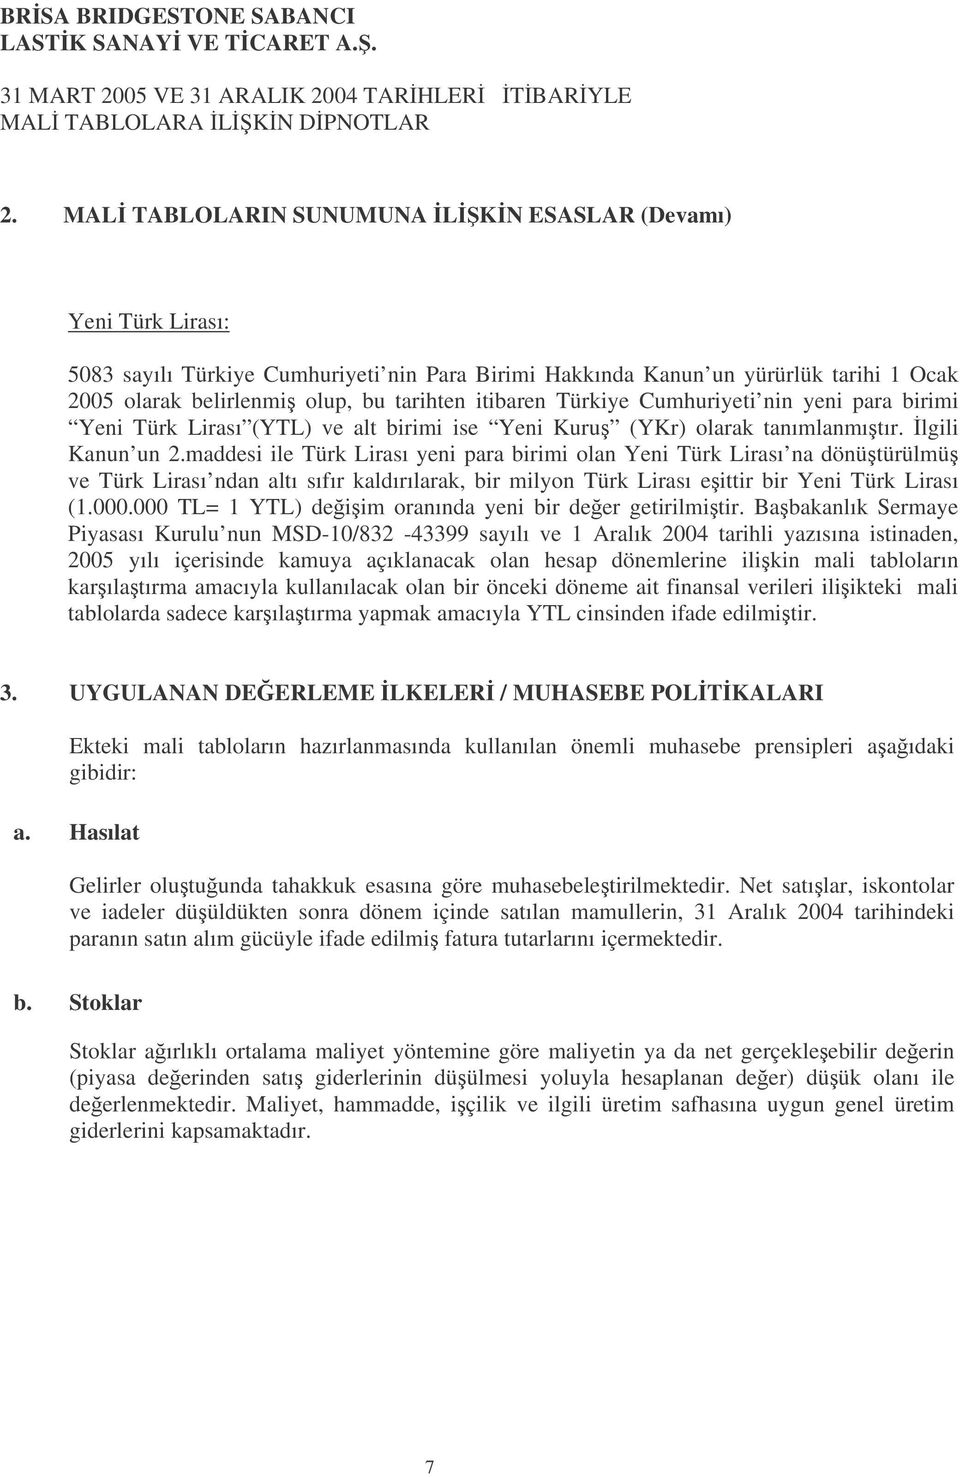 Türkiye Cumhuriyeti nin yeni para birimi Yeni Türk Lirası () ve alt birimi ise Yeni Kuru (YKr) olarak tanımlanmıtır. lgili Kanun un 2.